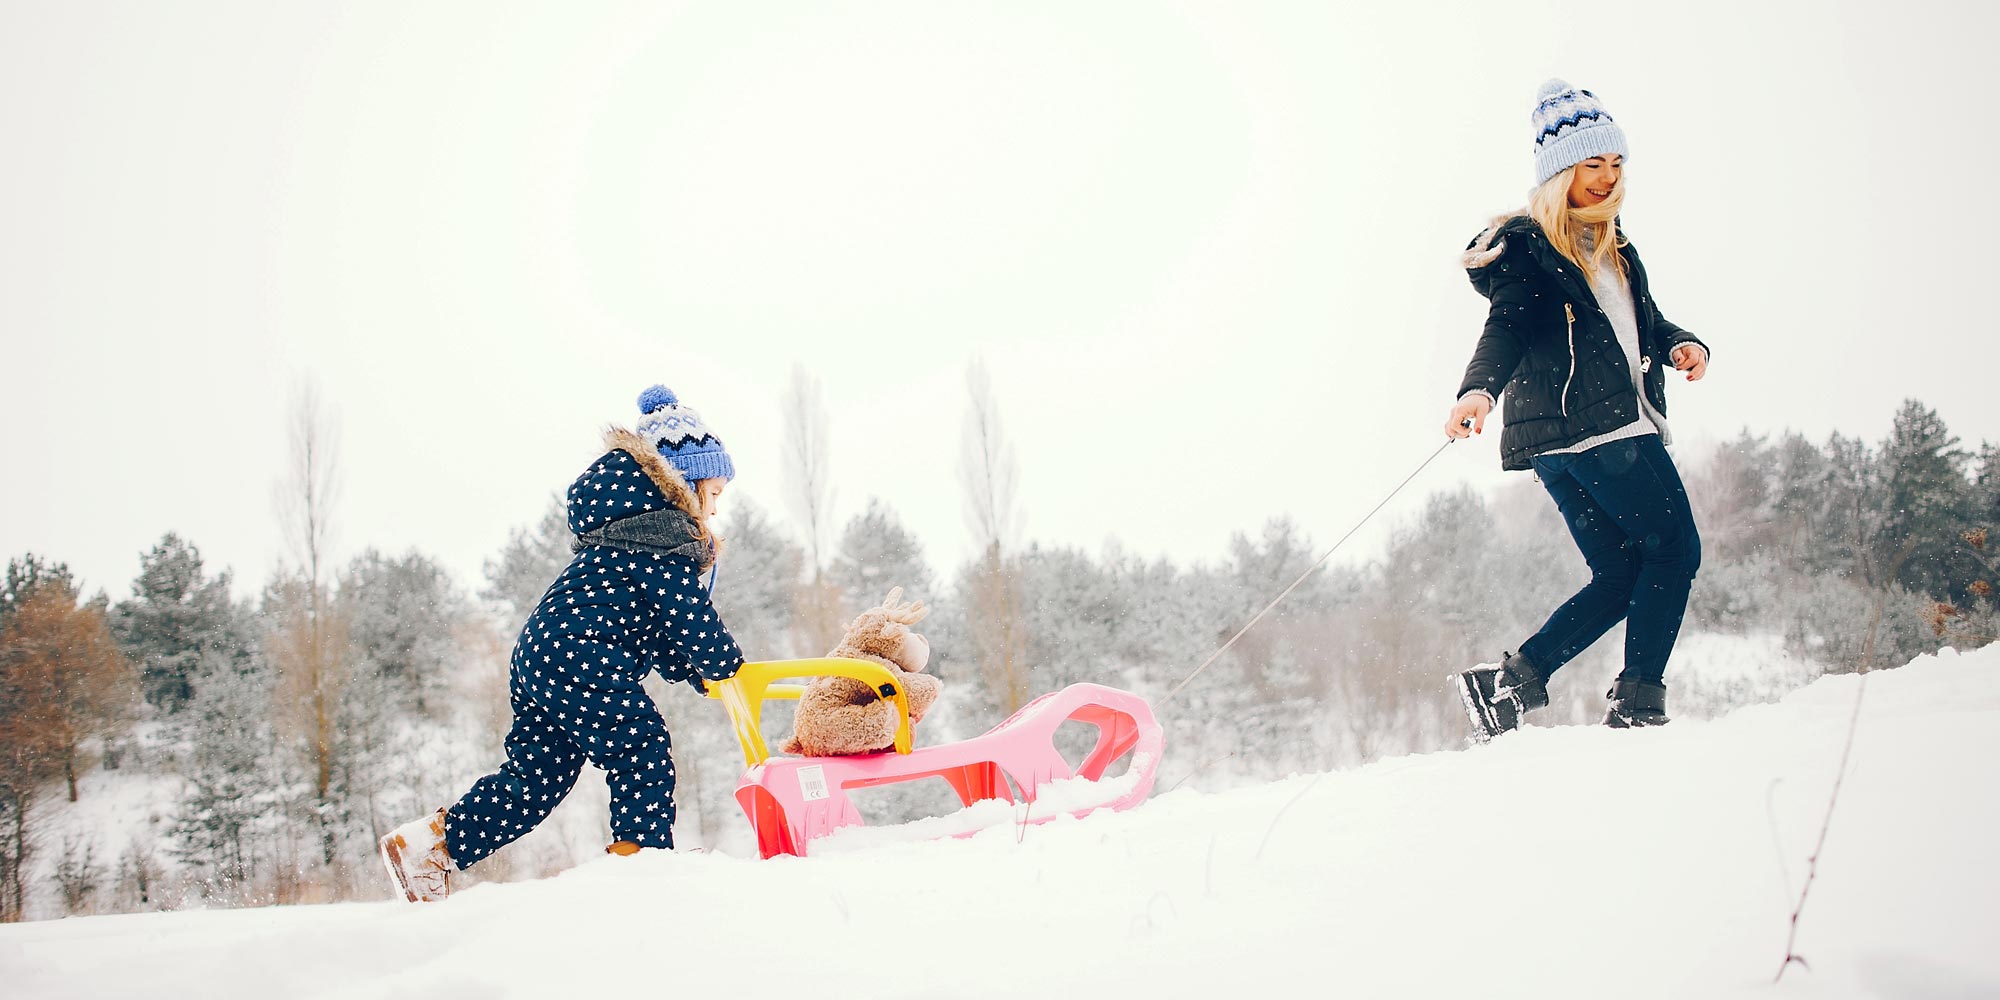 Спортивные игры на снегу с семьей: необходимое снаряжение для активных зимних развлечений